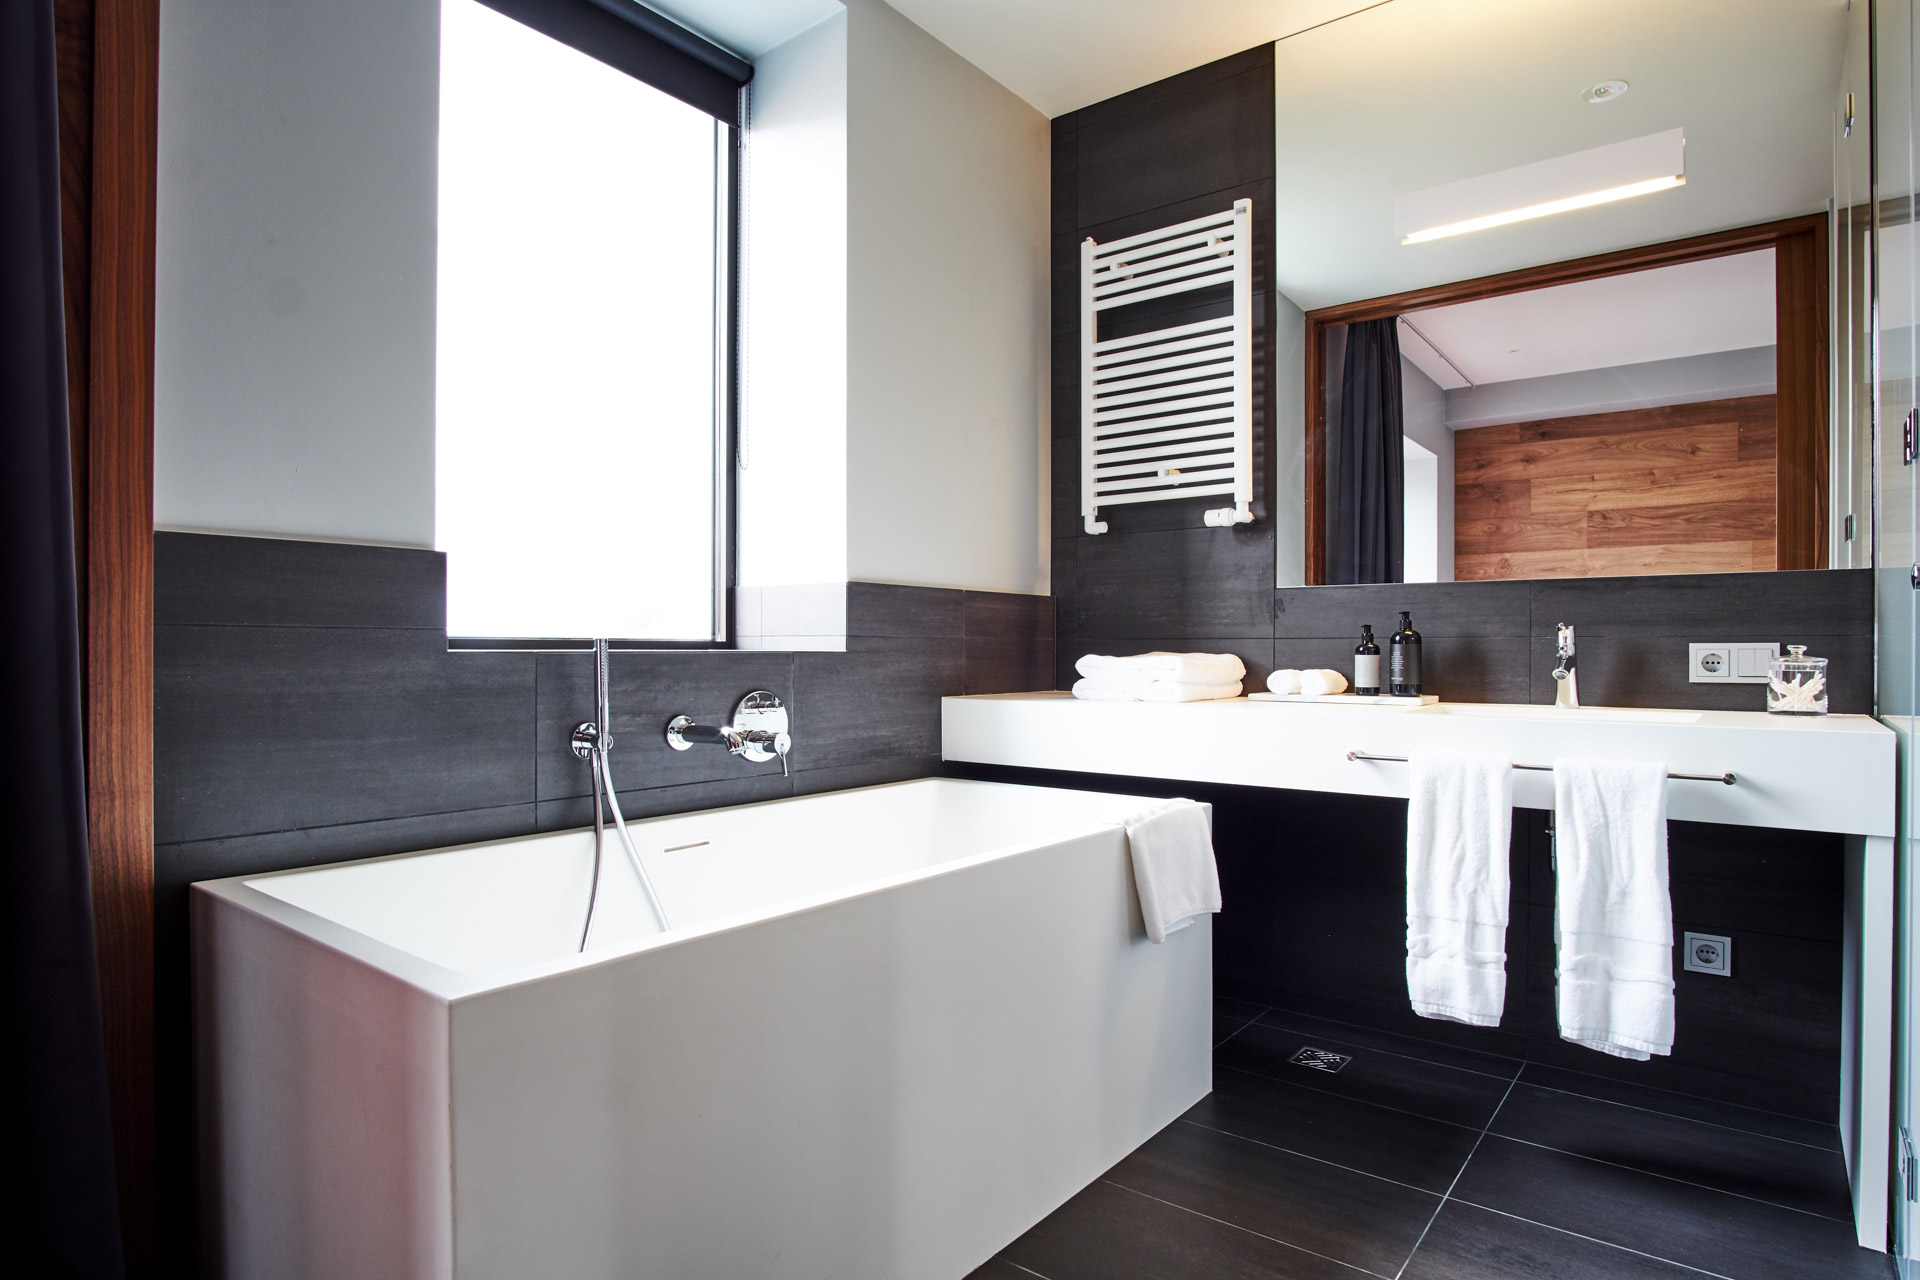 On retrouve dans les salles de bain le même mélange entre minimalisme contemporain et style scandinave